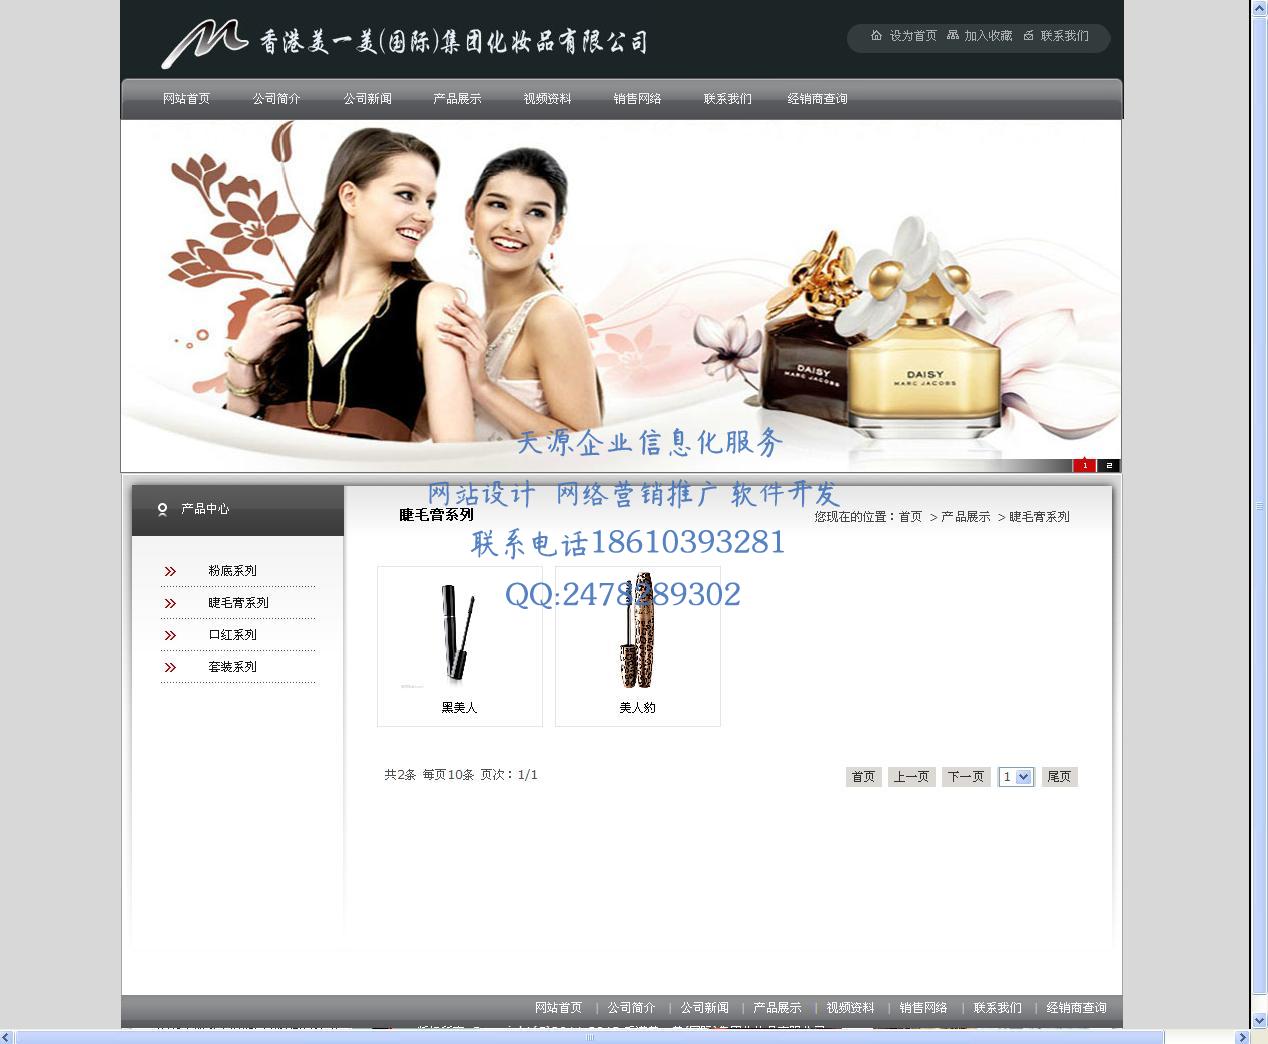 2047香港美一美(国际)集团化妆品有限公司2